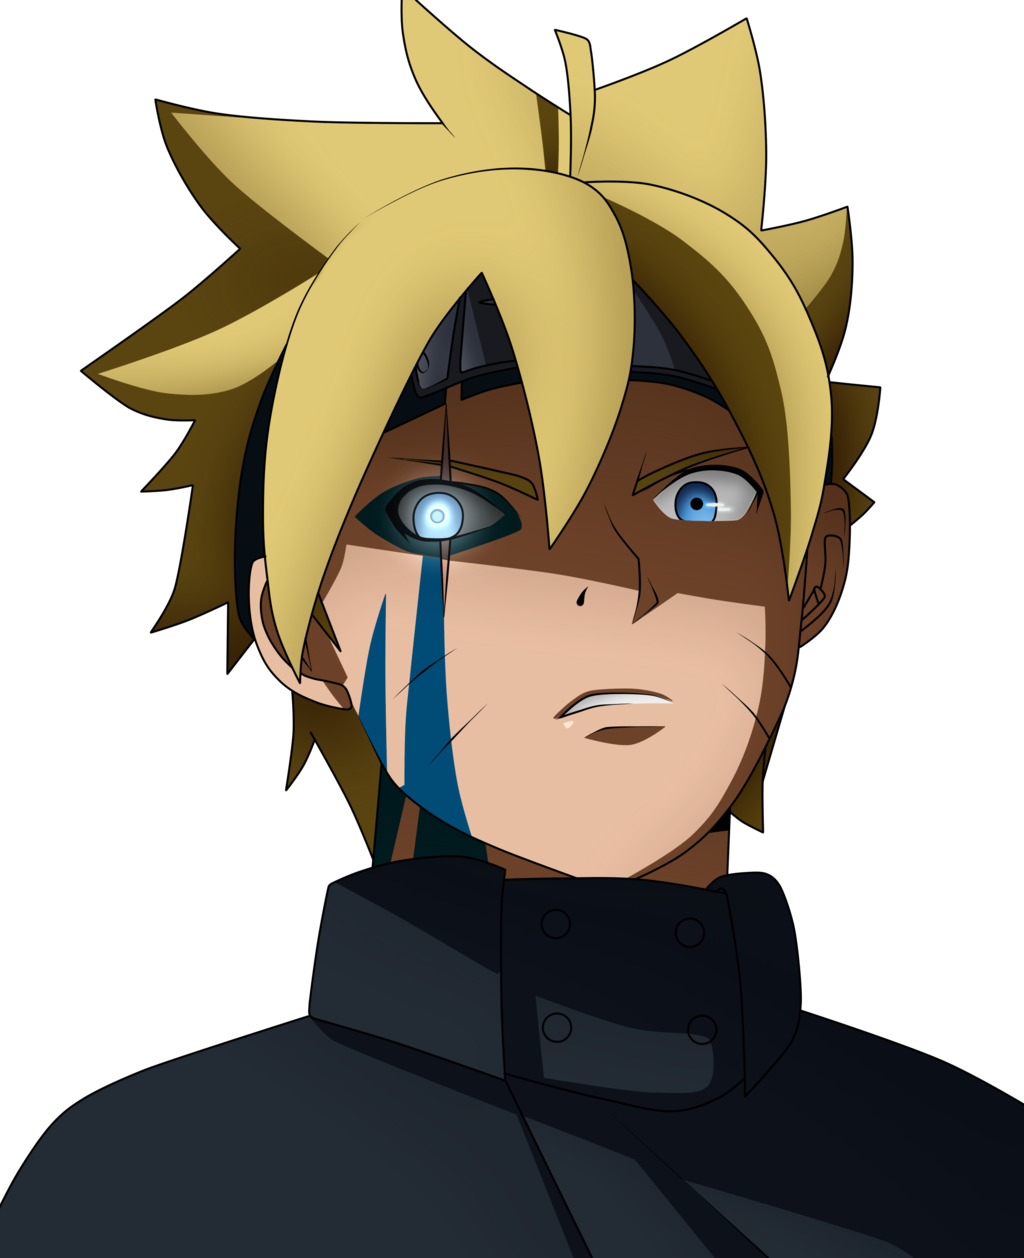 Boruto: Naruto Next Generations / #anime  Anime naruto, Naruto shippuden  anime, Anime